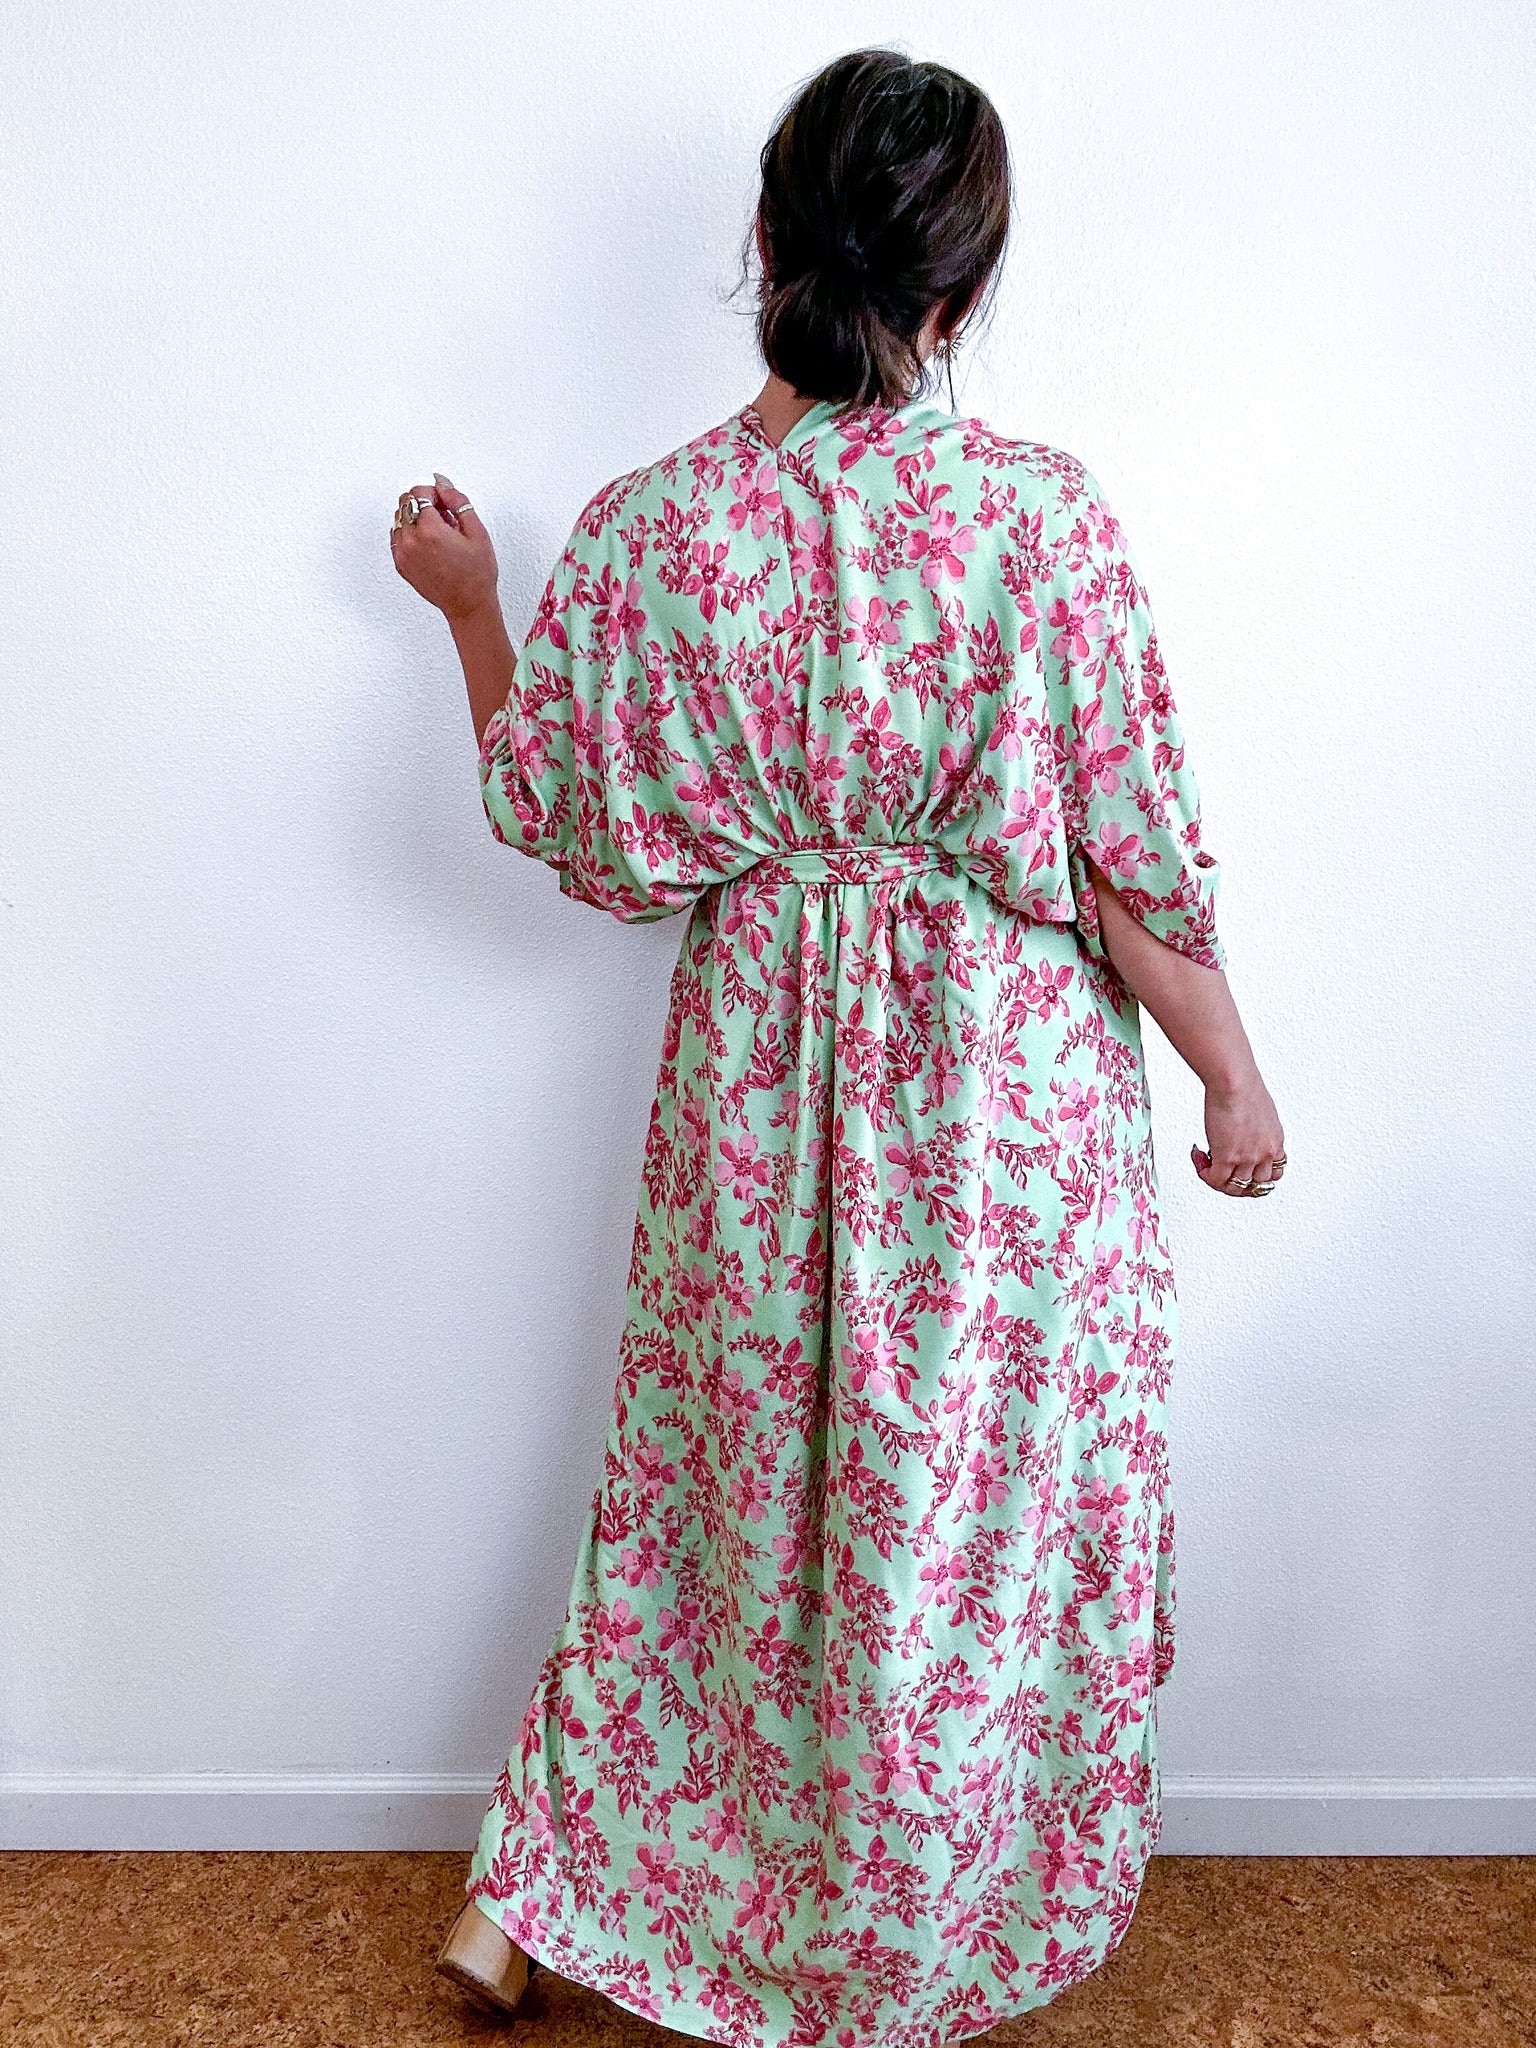 Print High Low Kimono Mint Pink Floral Challis